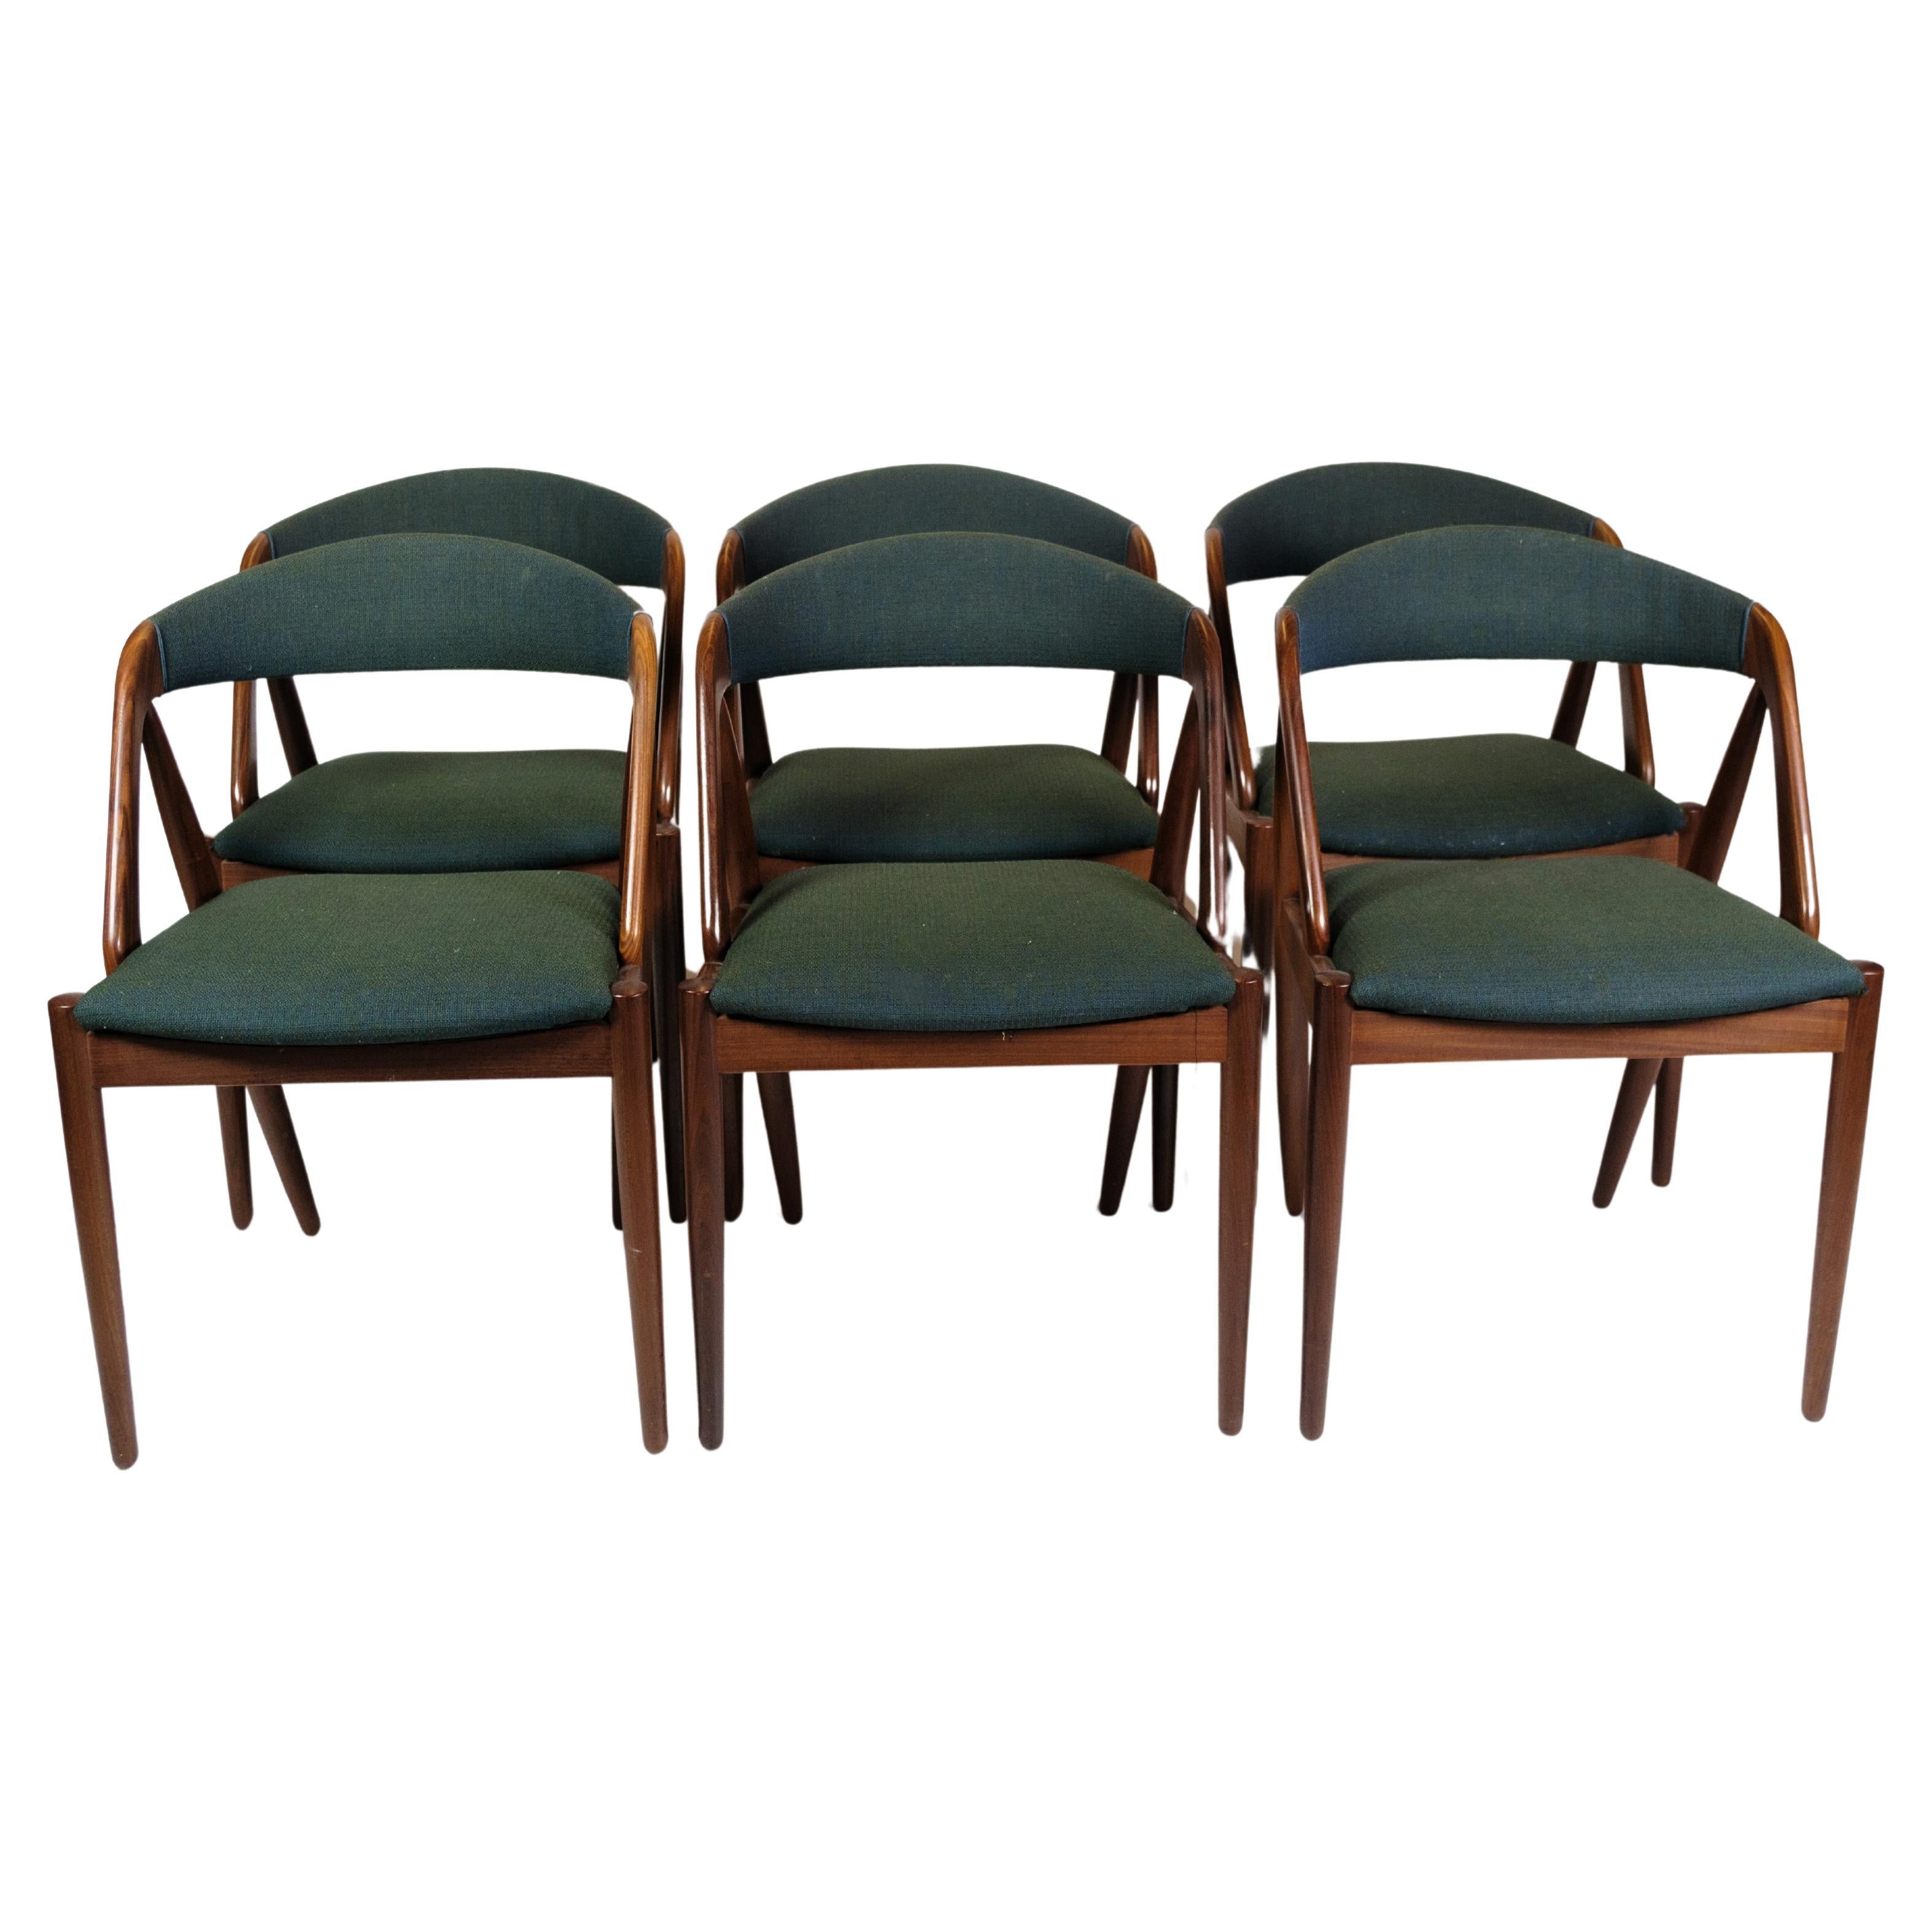 Satz von 6 Esszimmerstühlen Modell 31 aus Teakholz, hergestellt in Teakholz von Kai Kristiansen, von 1950